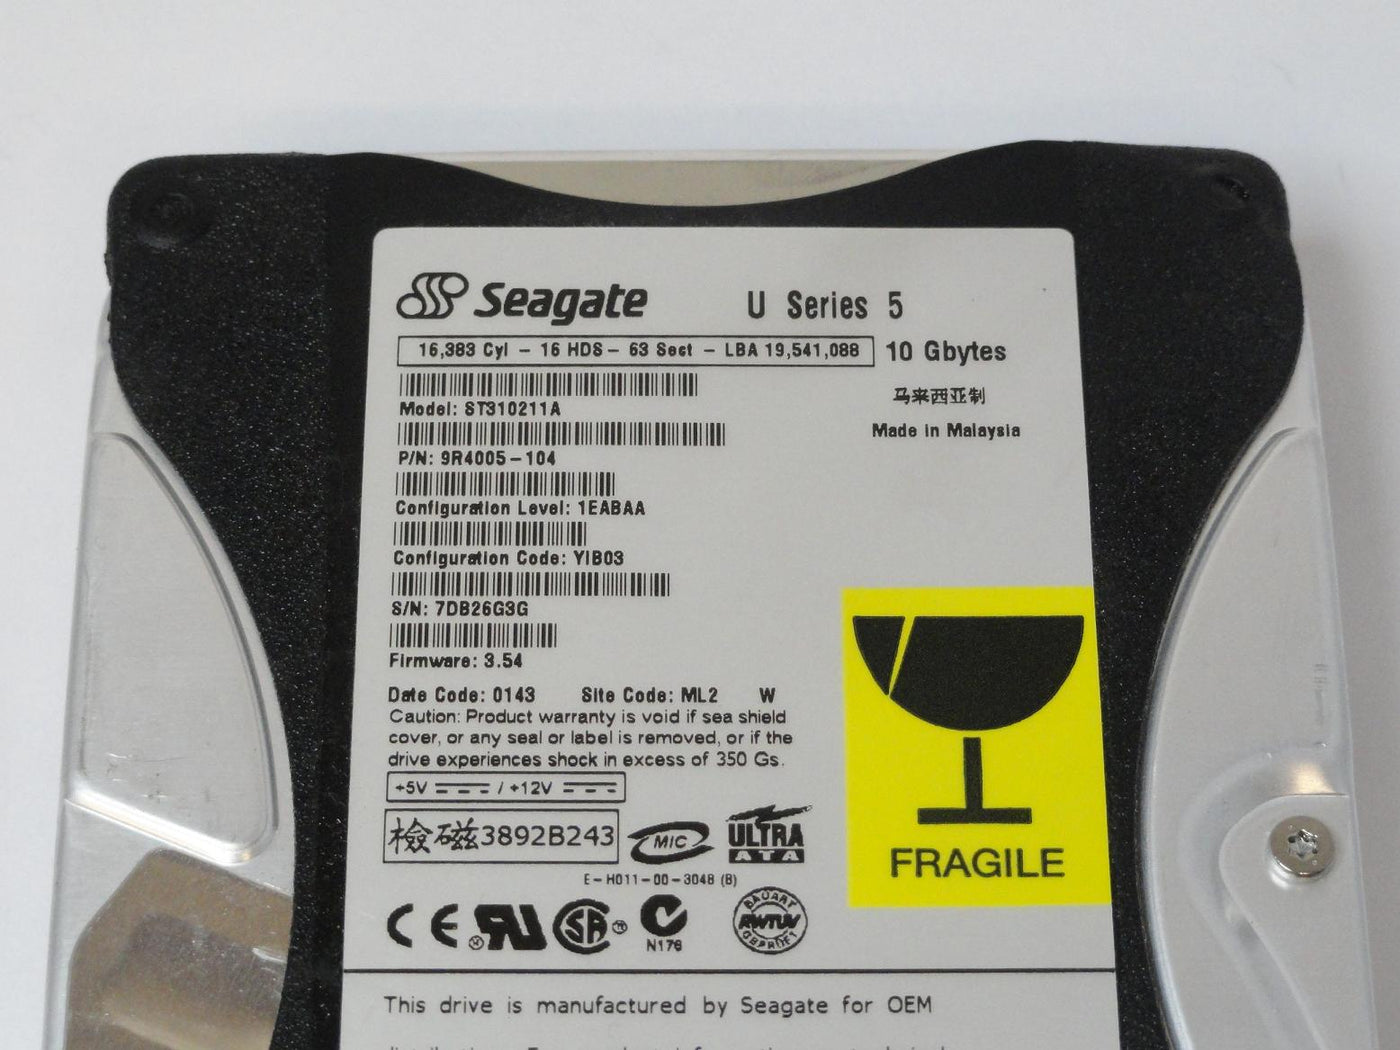 PR15160_9R4005-104_Seagate 10.2GB IDE 5400rpm 3.5in HDD - Image3